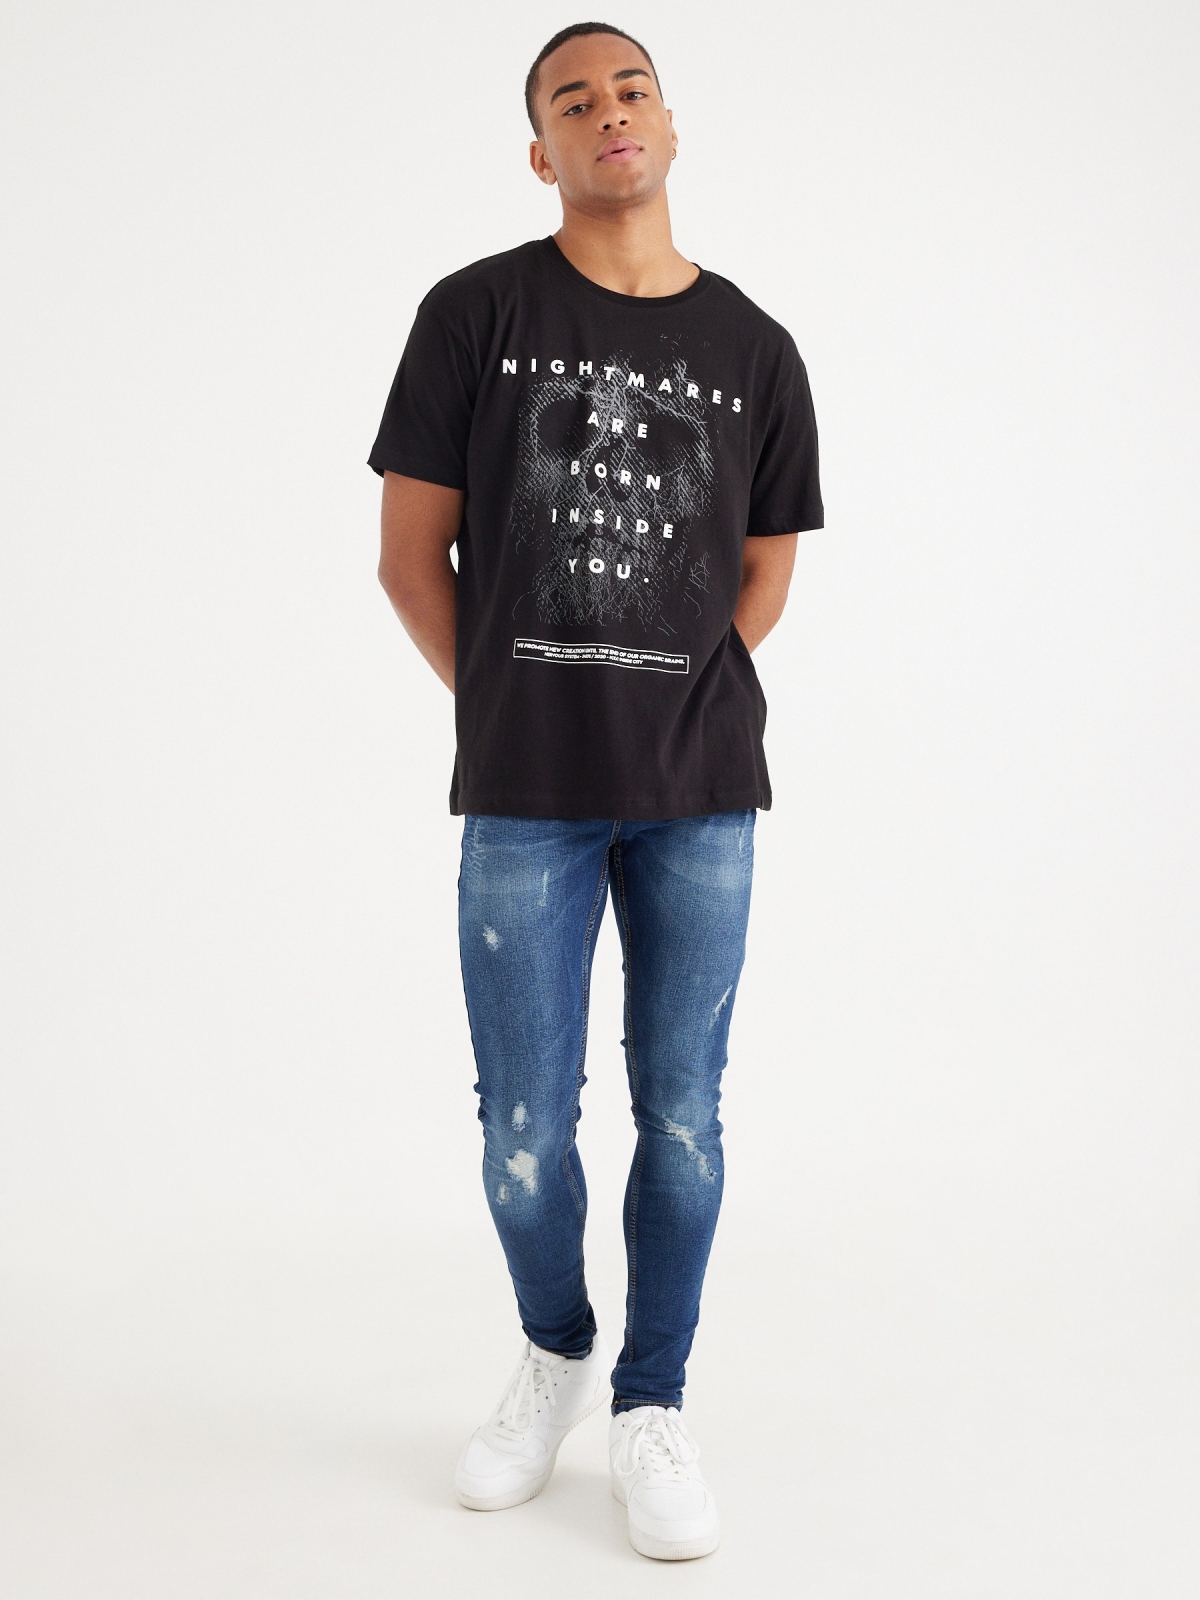 T-shirt com texto contrastante preto vista geral frontal